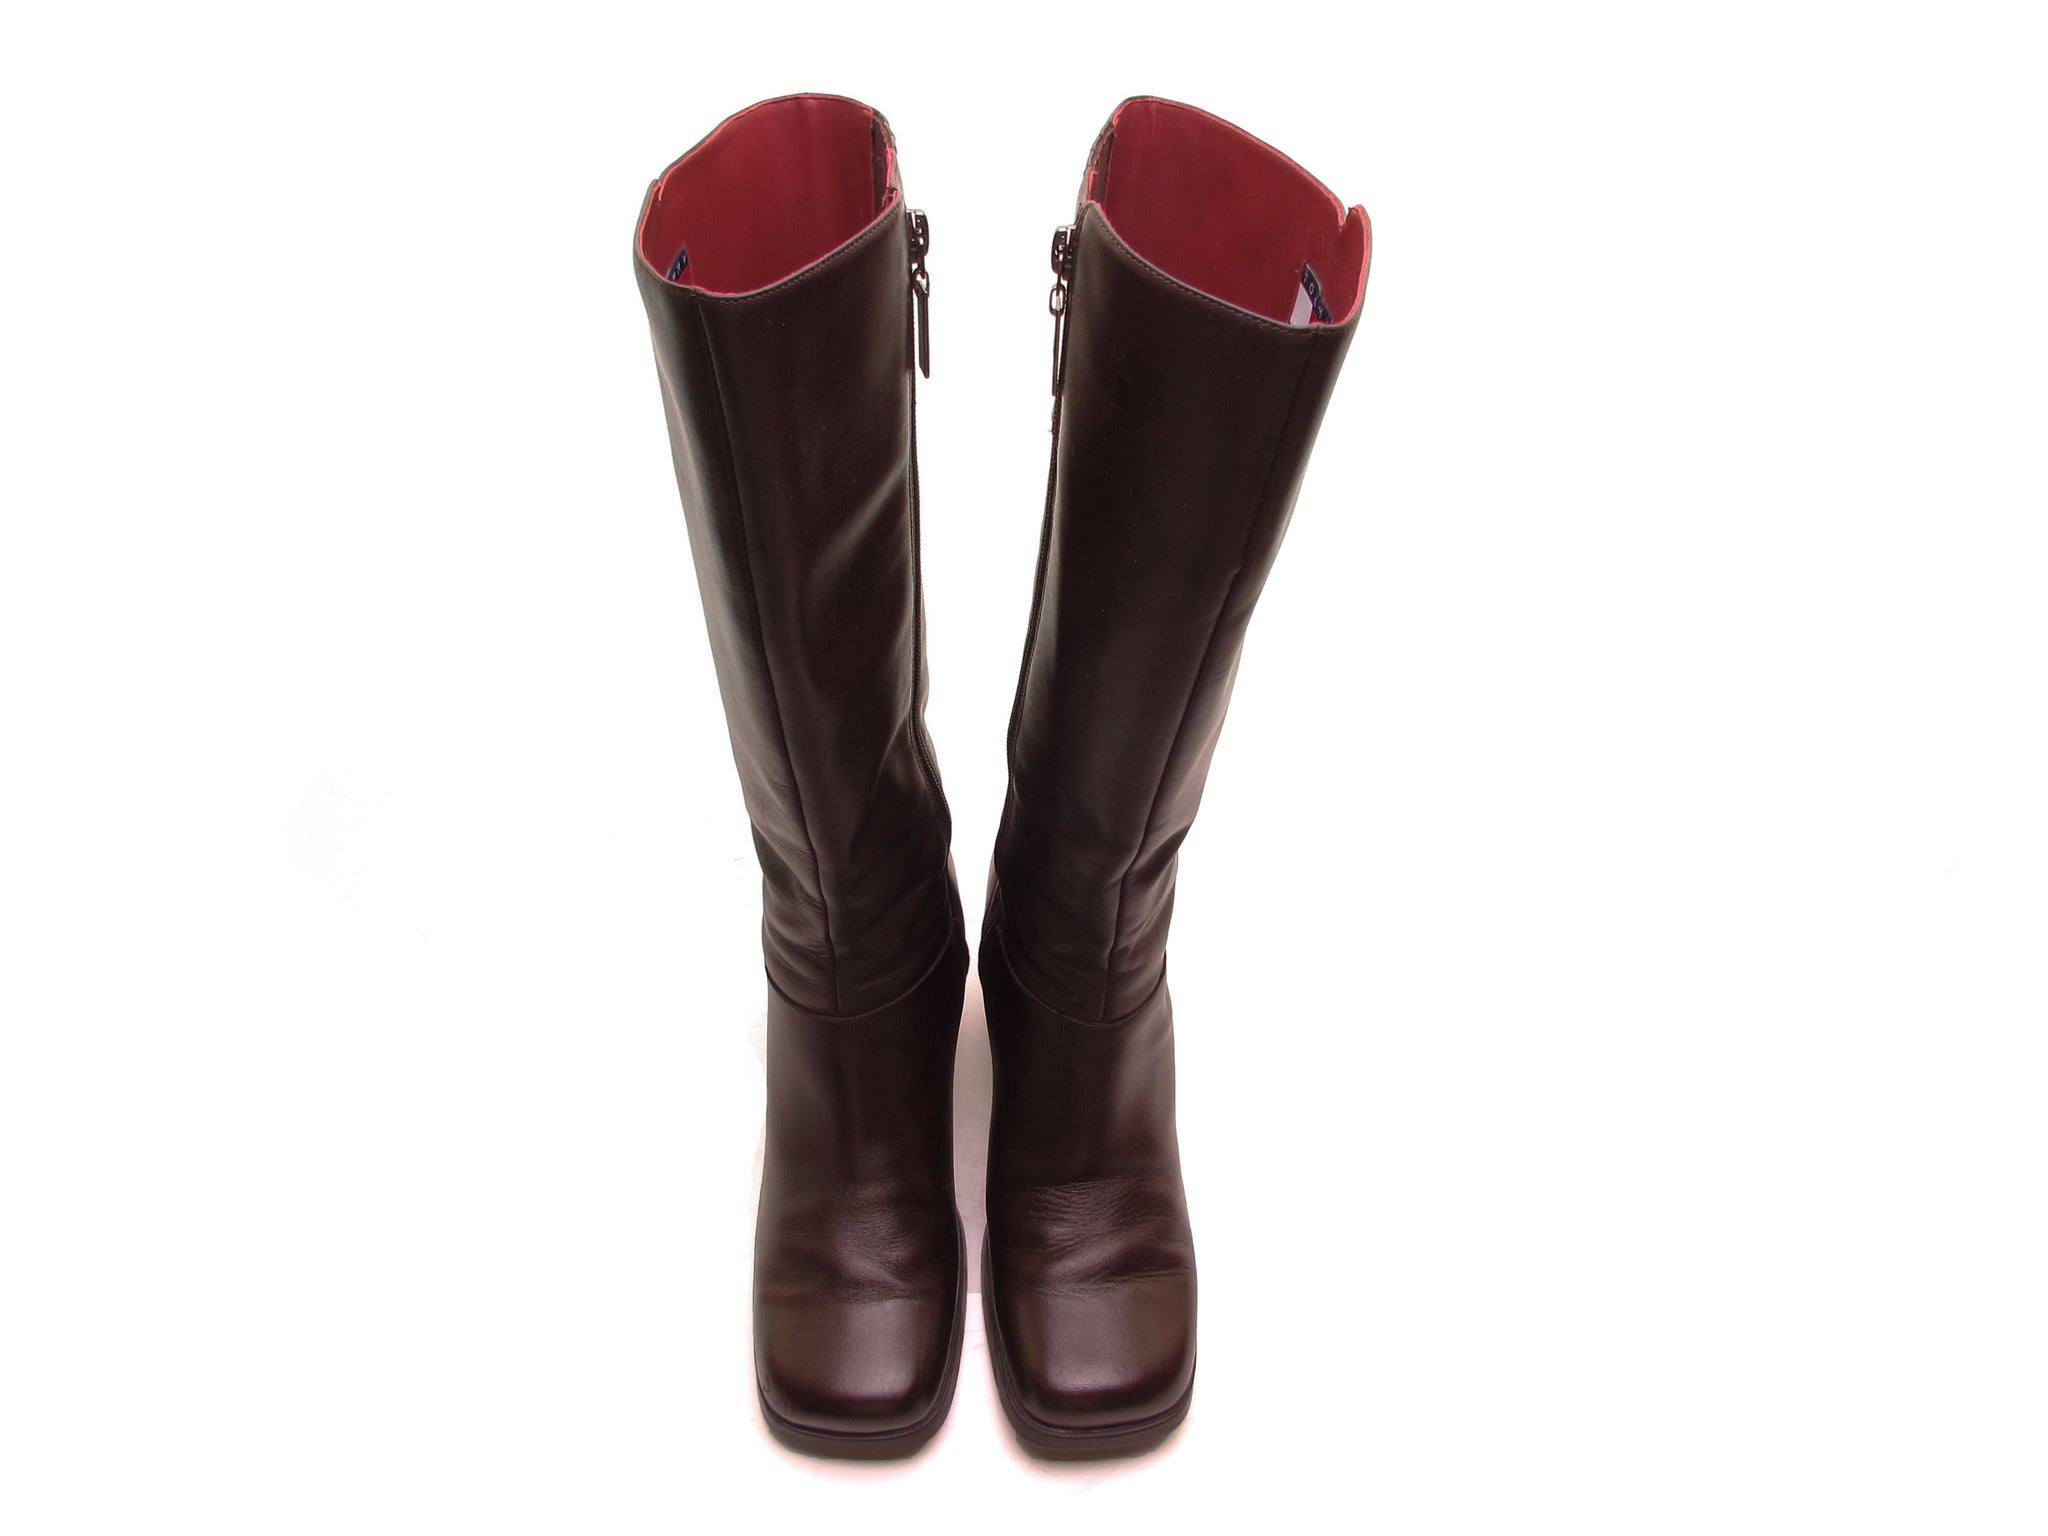 Brandmand Sober skarpt Vintage 90s TOMMY HILFIGER boots brown leather tall boots 90s platform –  vintage90s.com